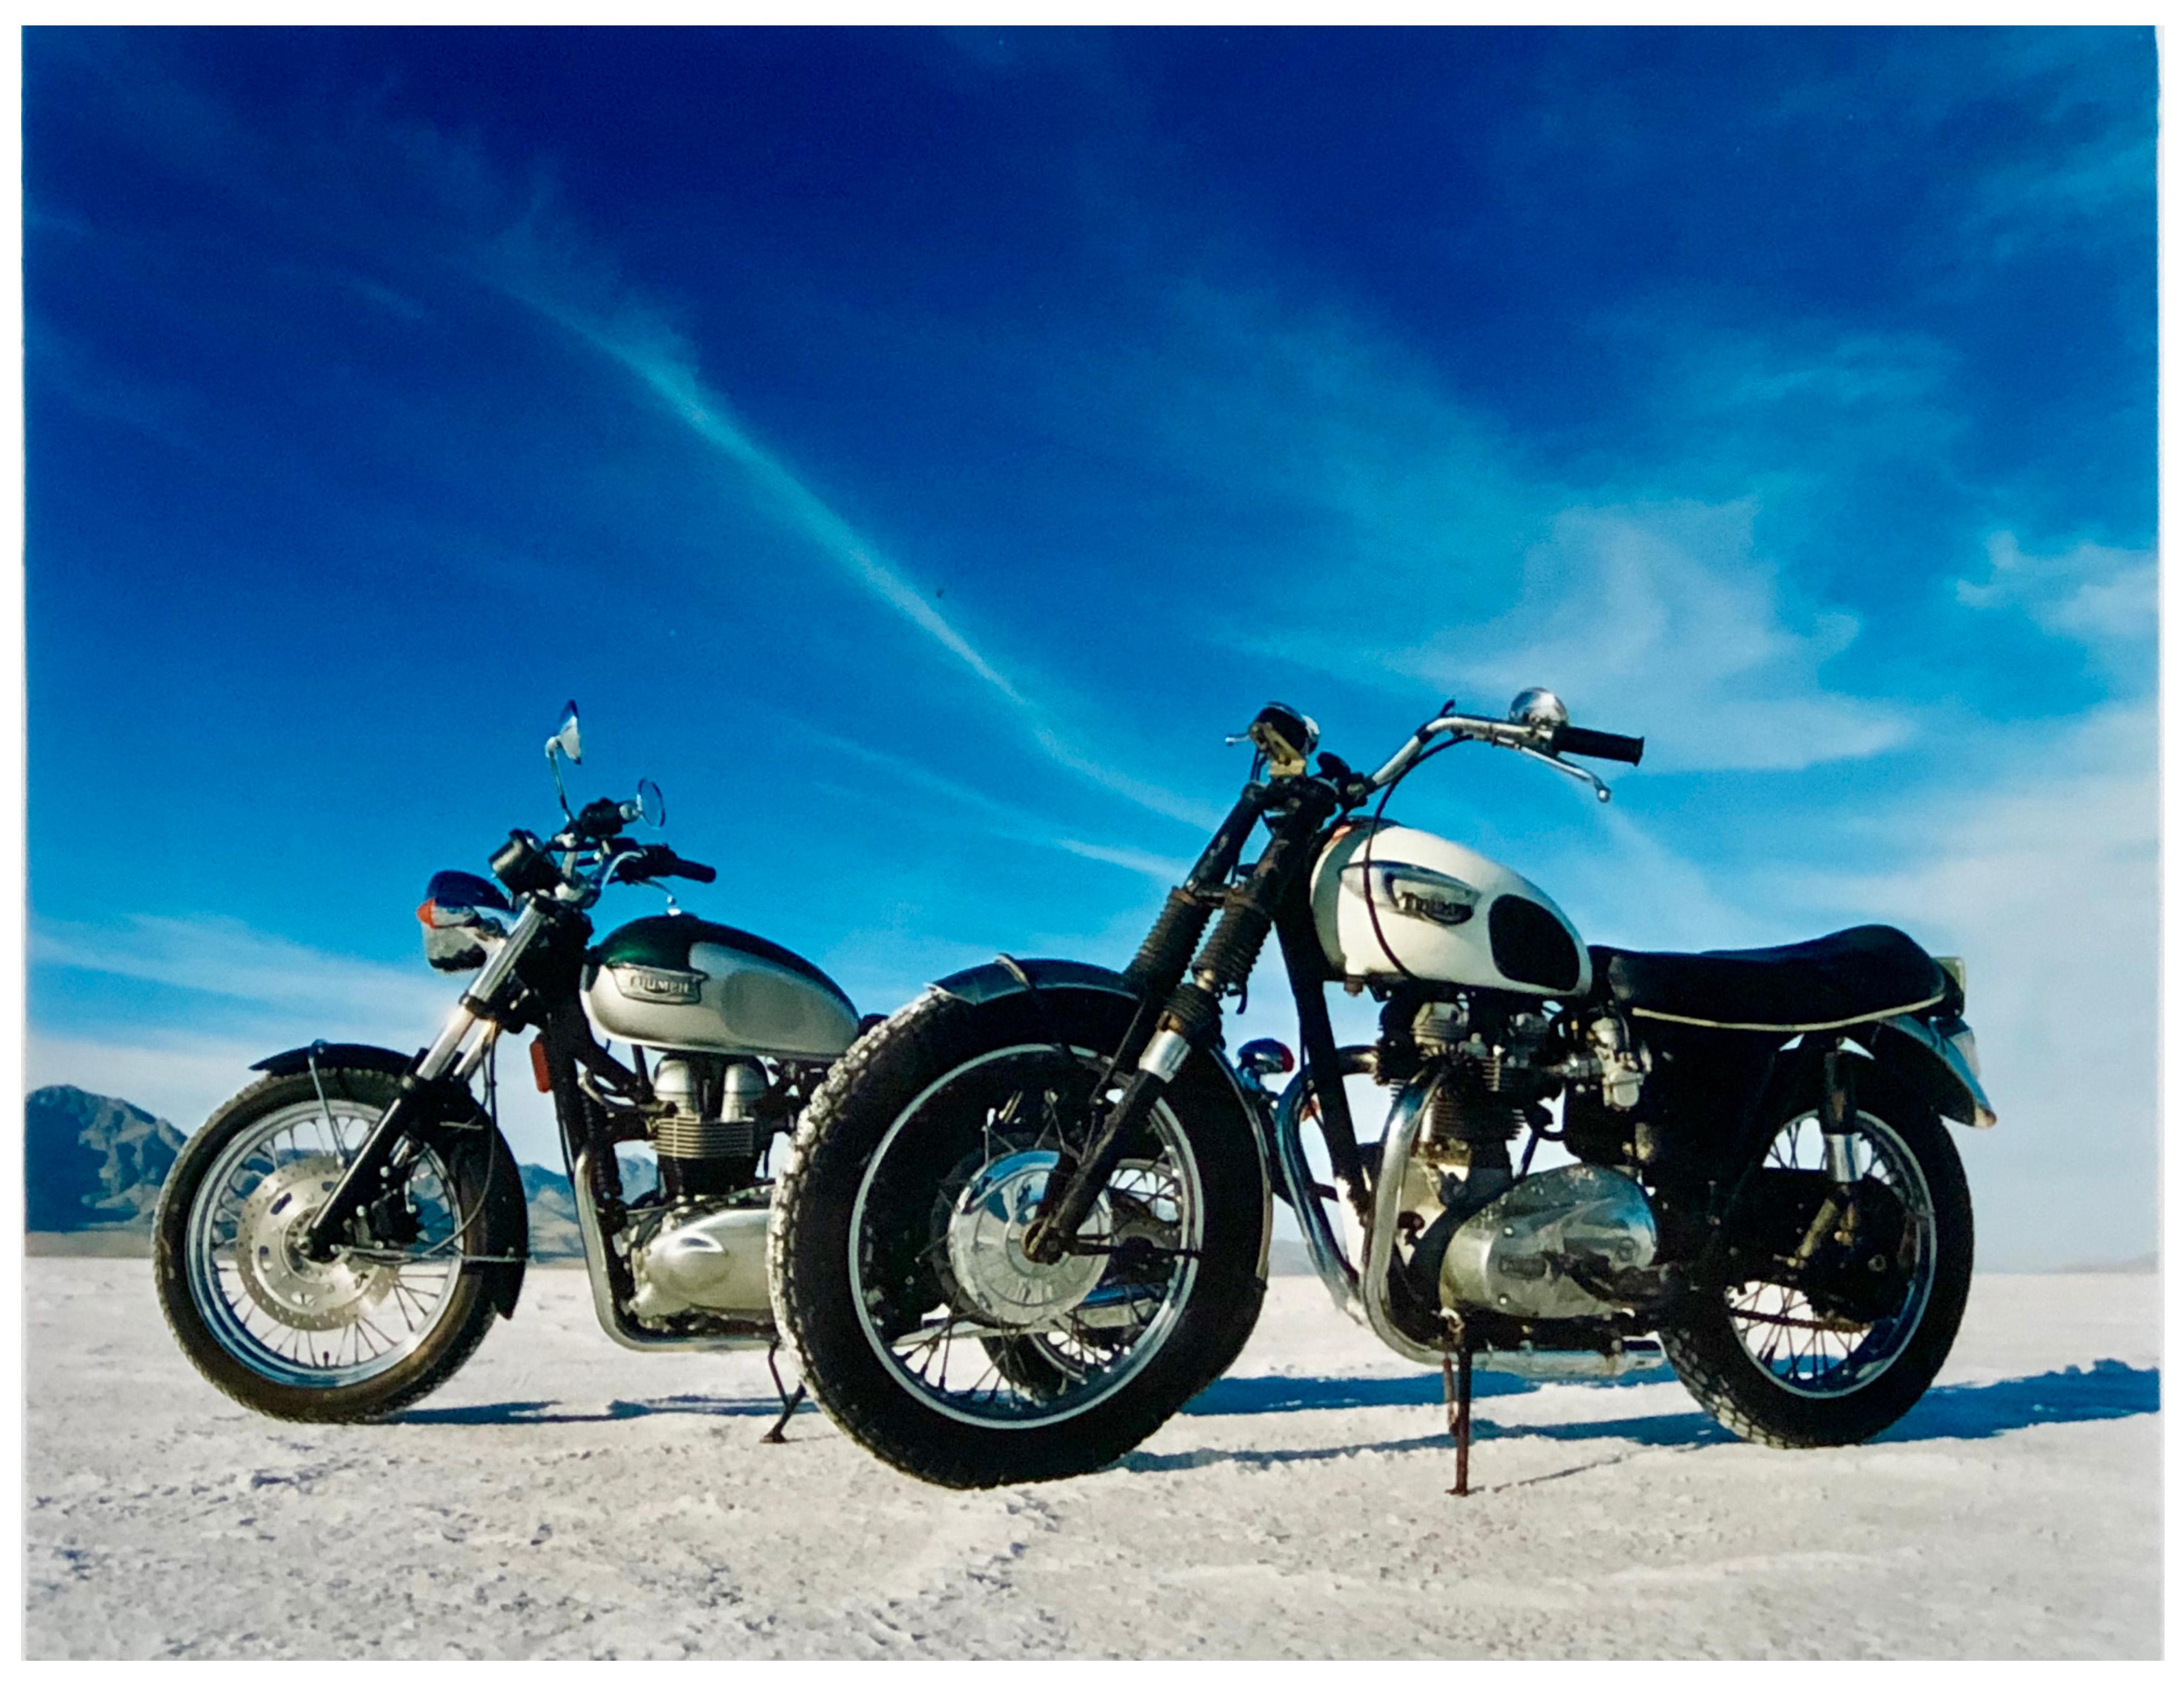 Bonneville Motorcycles, Bonneville, Utah - American Landscape Color Photography